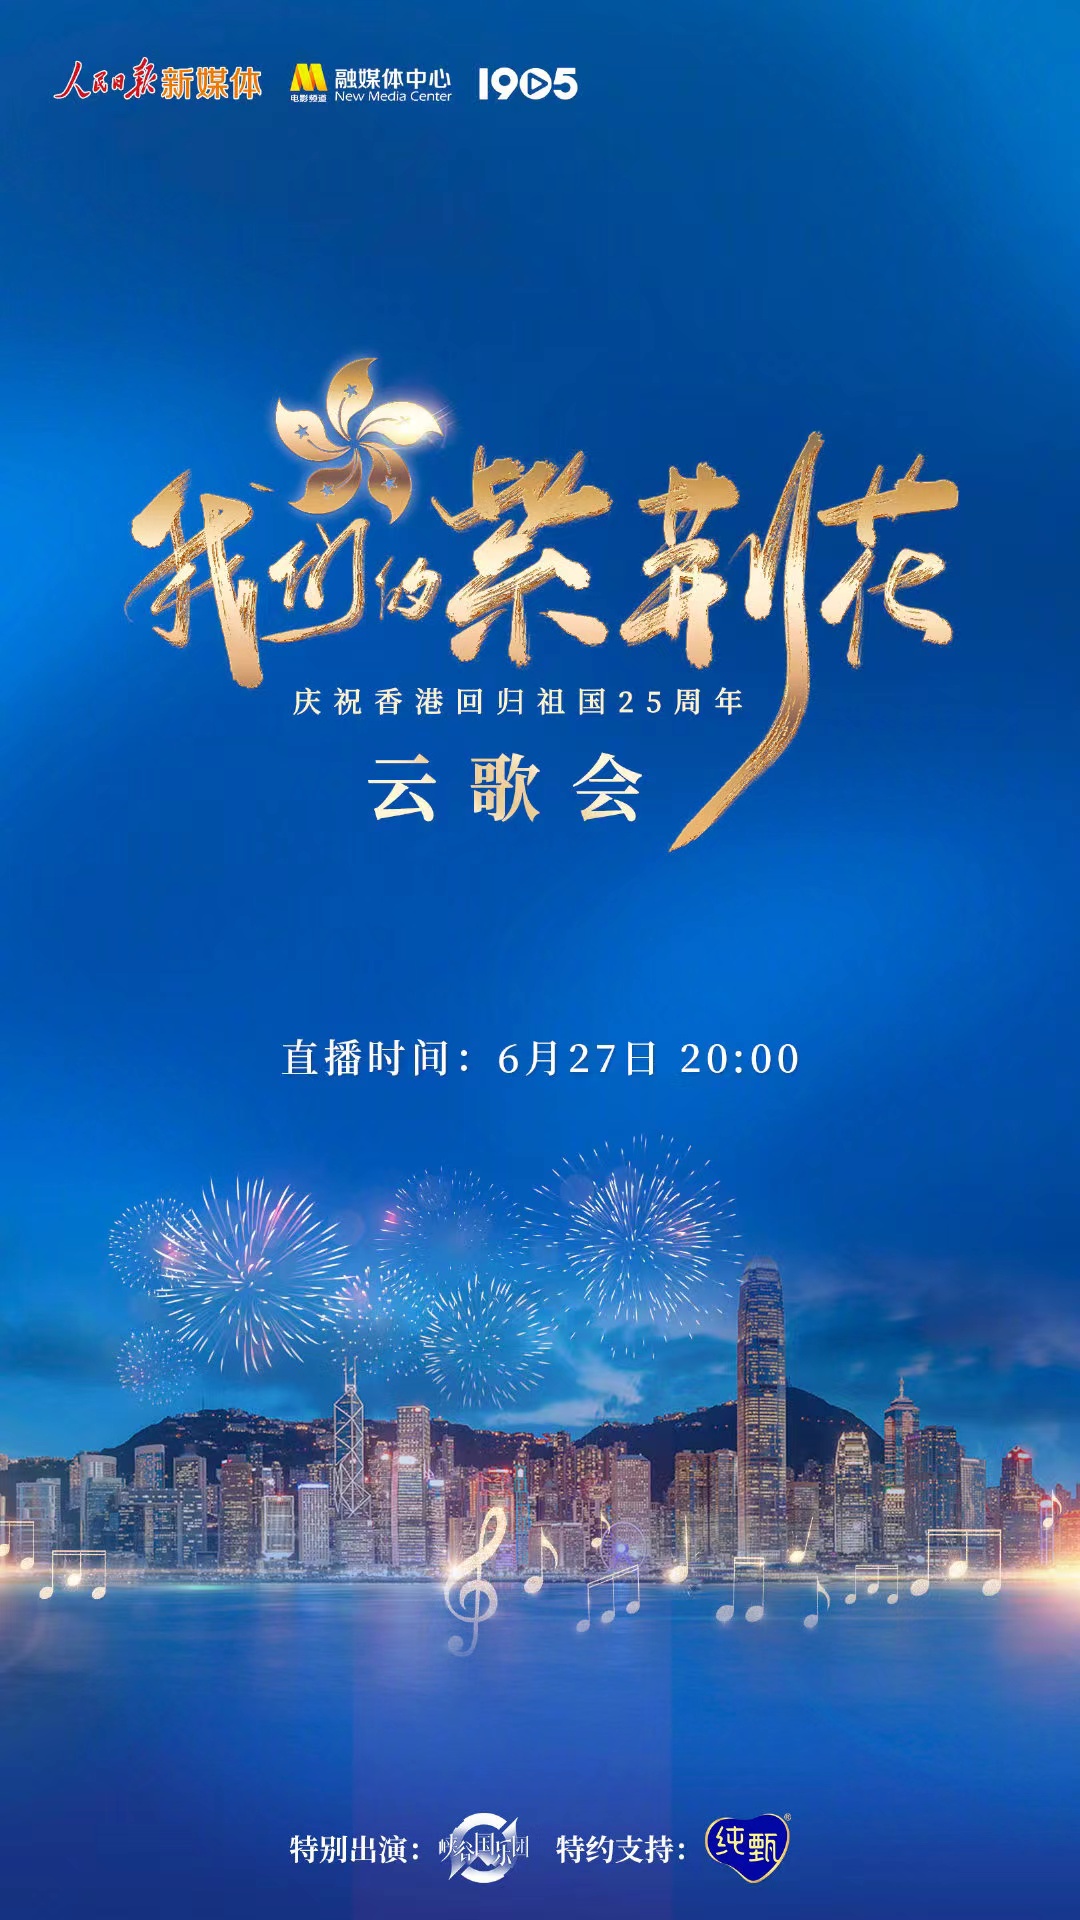 《我们的紫荆花》云歌会星光璀璨,群星献歌唱响香港回归25周年